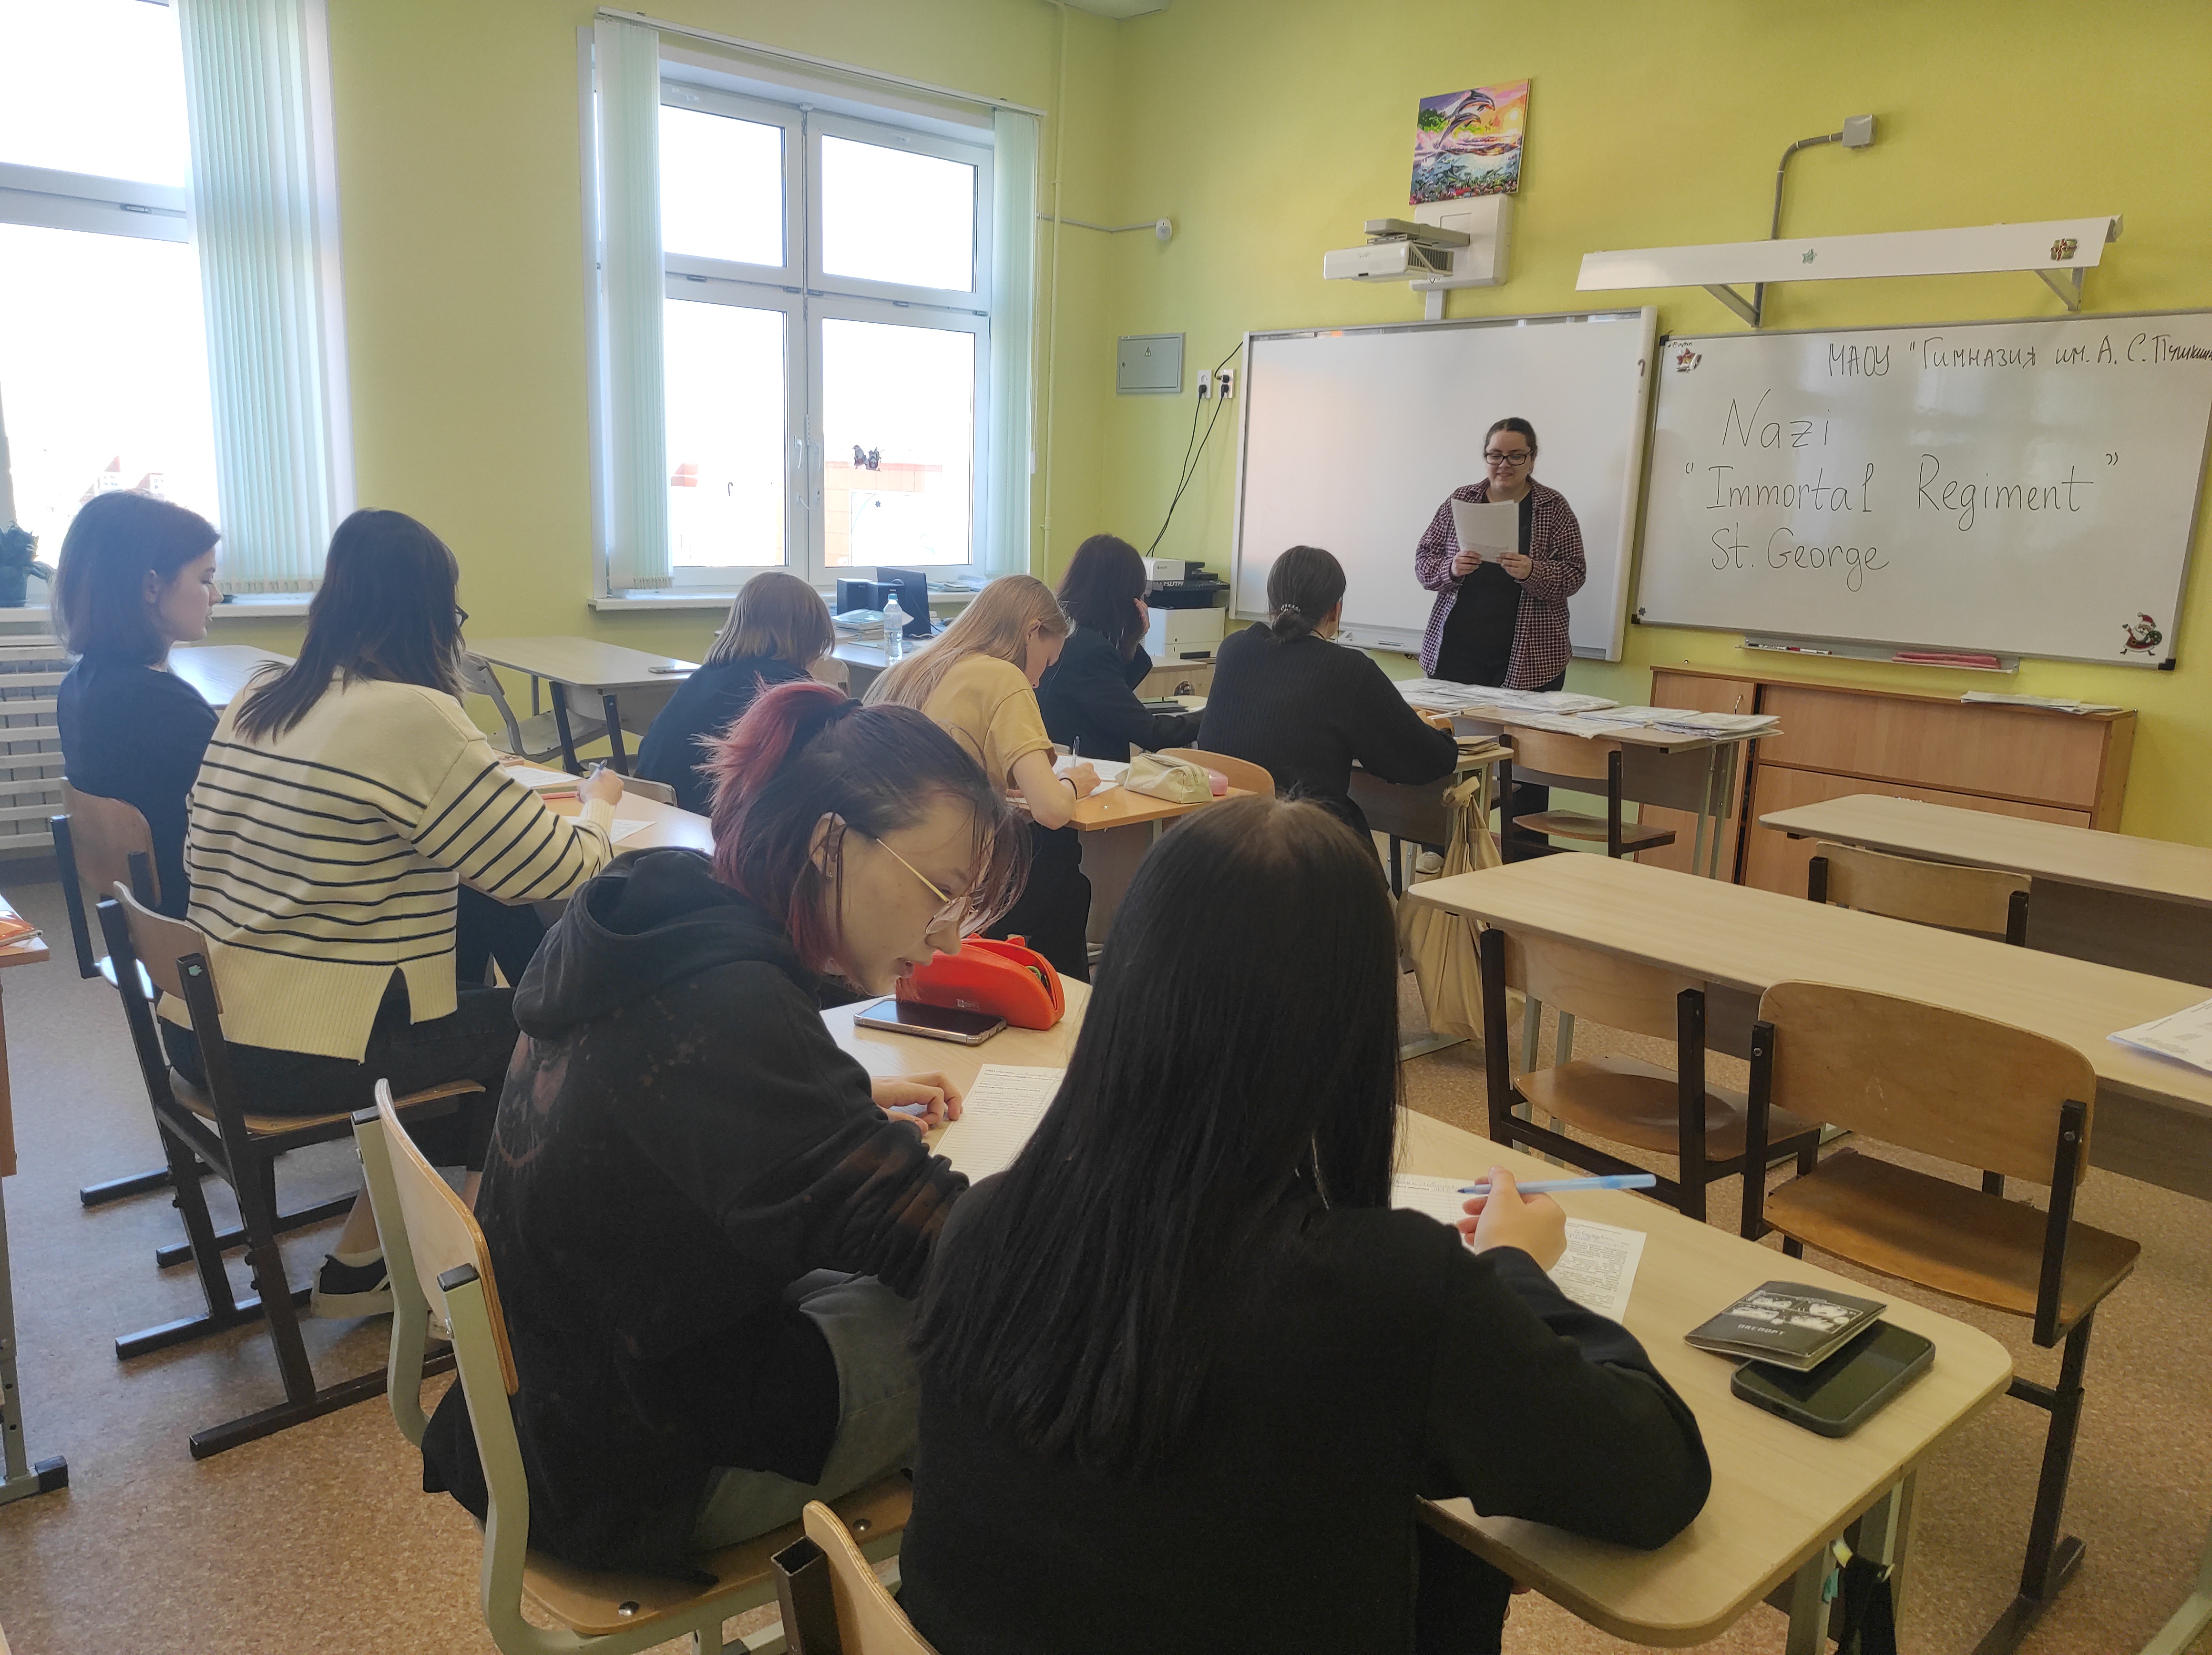 Более 35 учащихся 10-11 классов приняли участие в Едином диктанте на английском языке среди обучающихся старших классов общеобразовательных учебных заведений республики Коми.